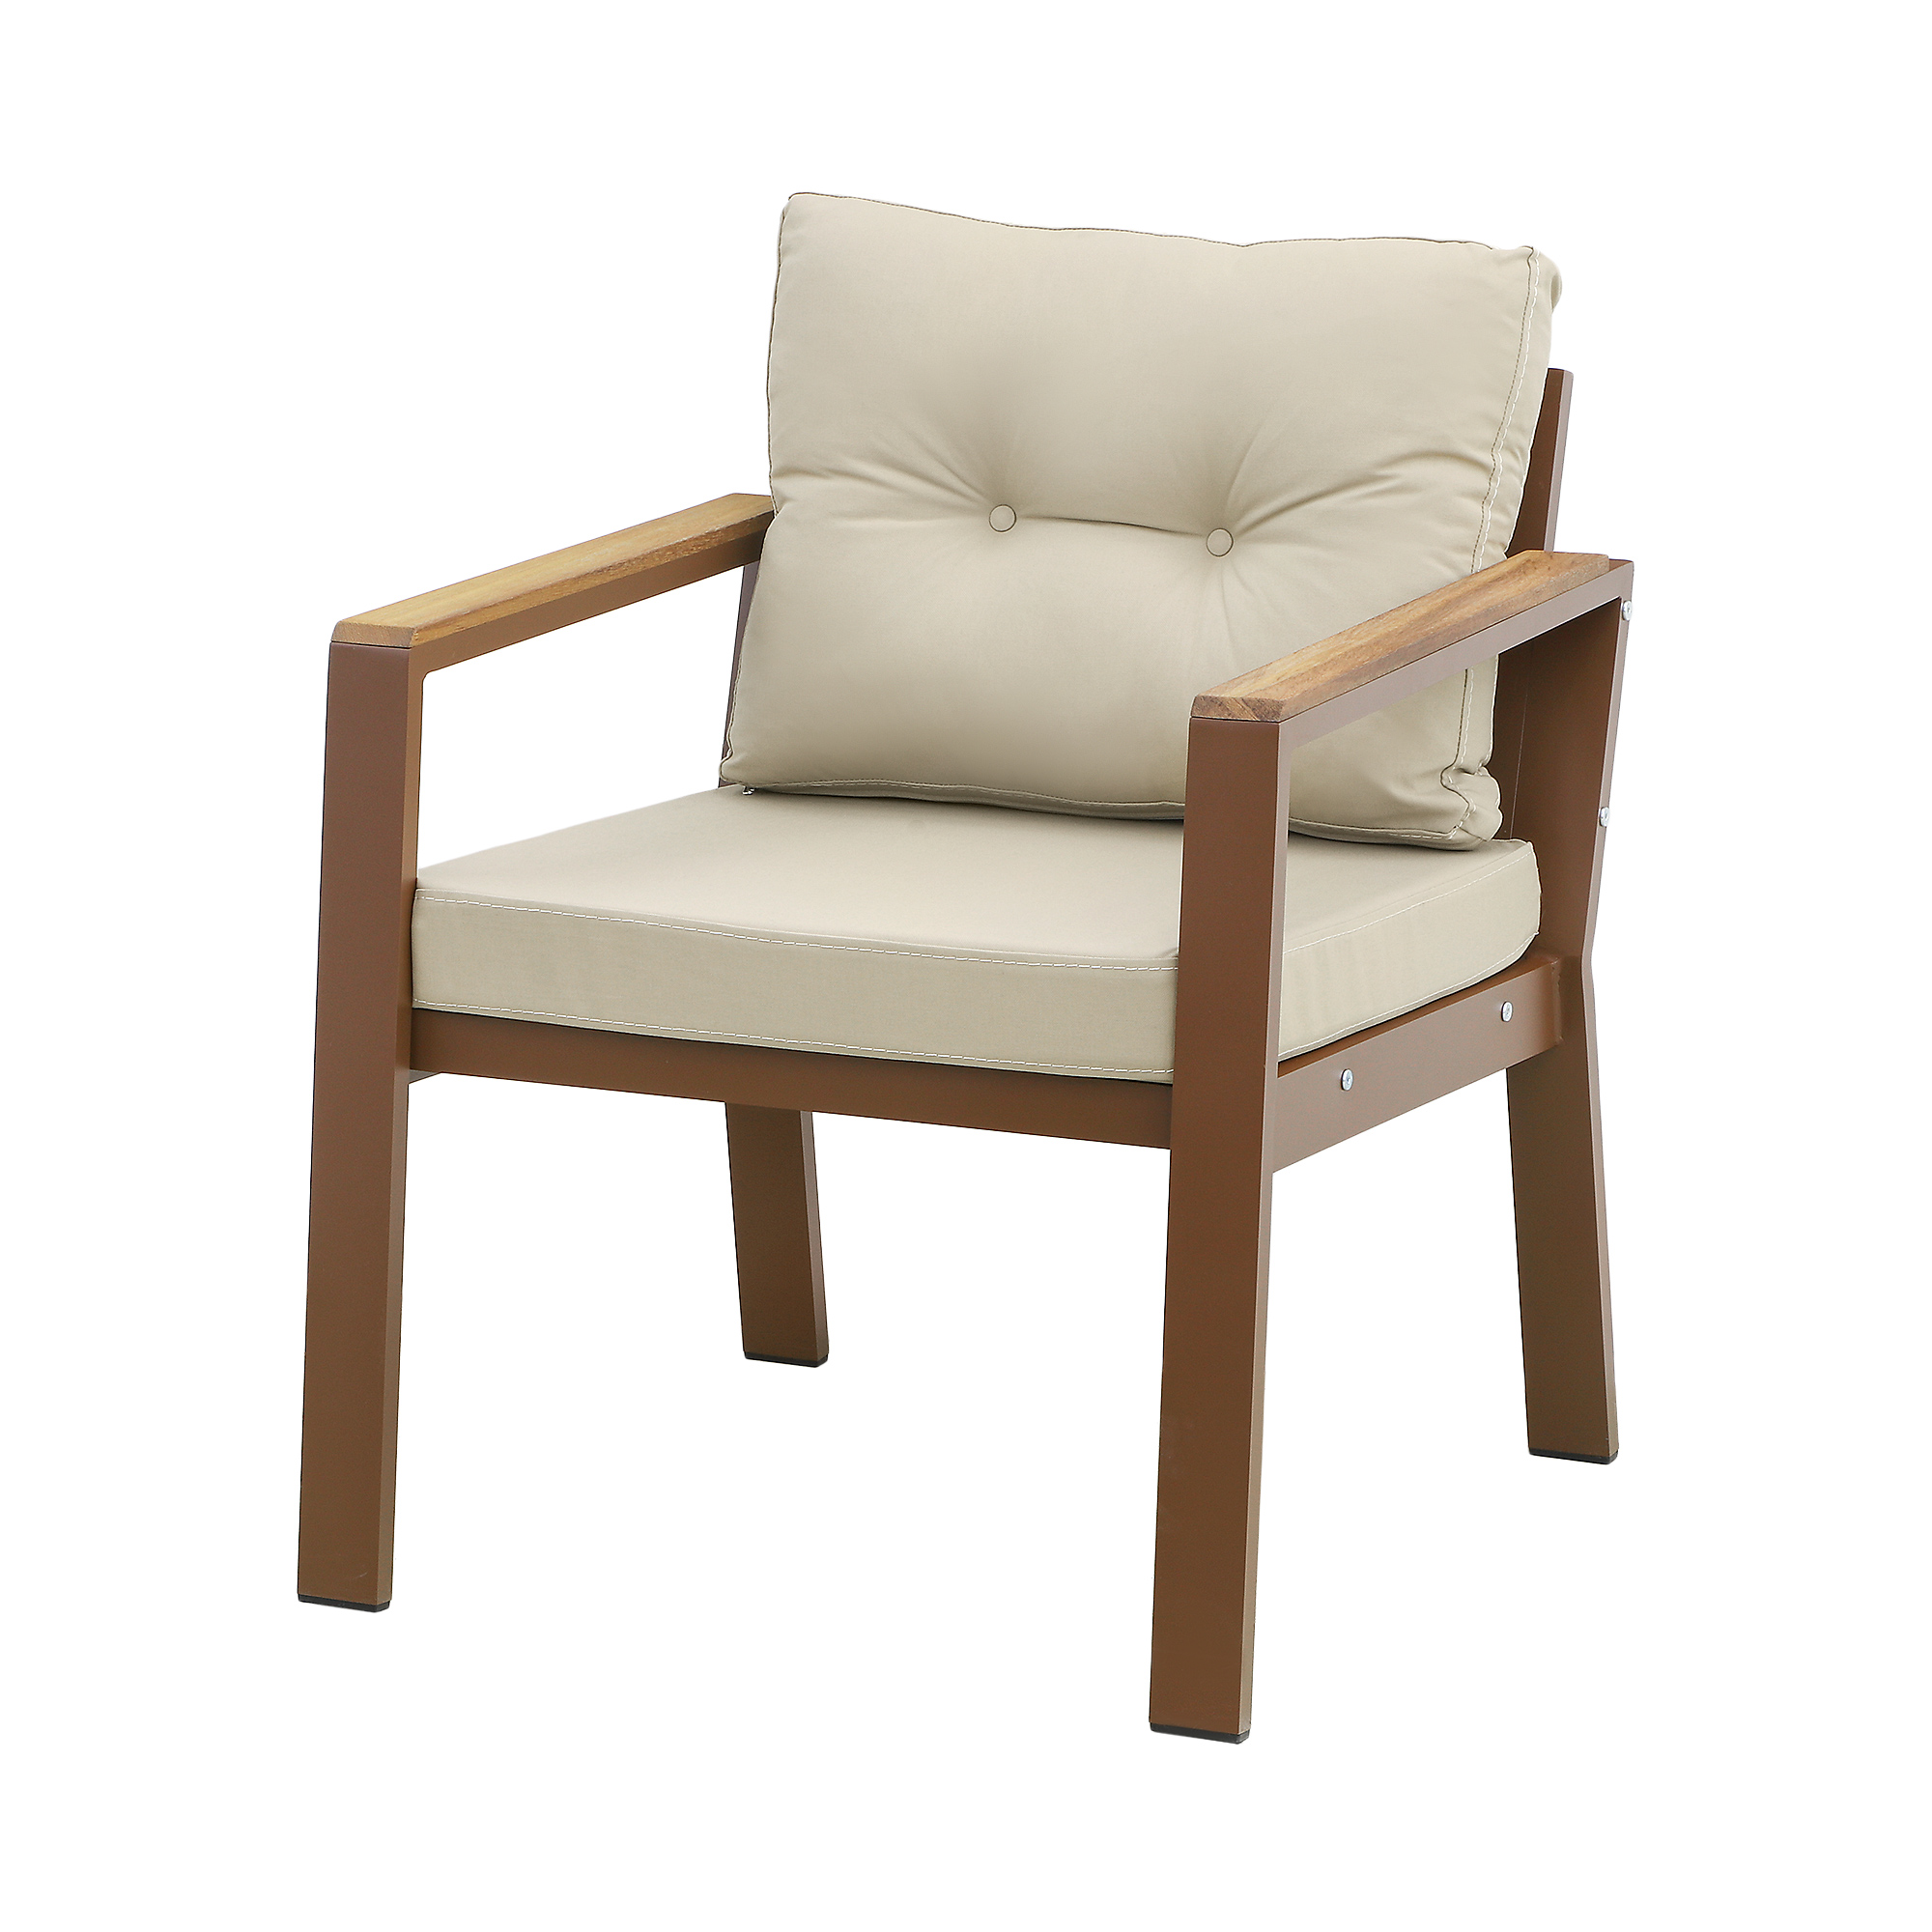 Комплект мебели Erinoz Daphne, цвет коричневый, размер 60x124x75 см - фото 3